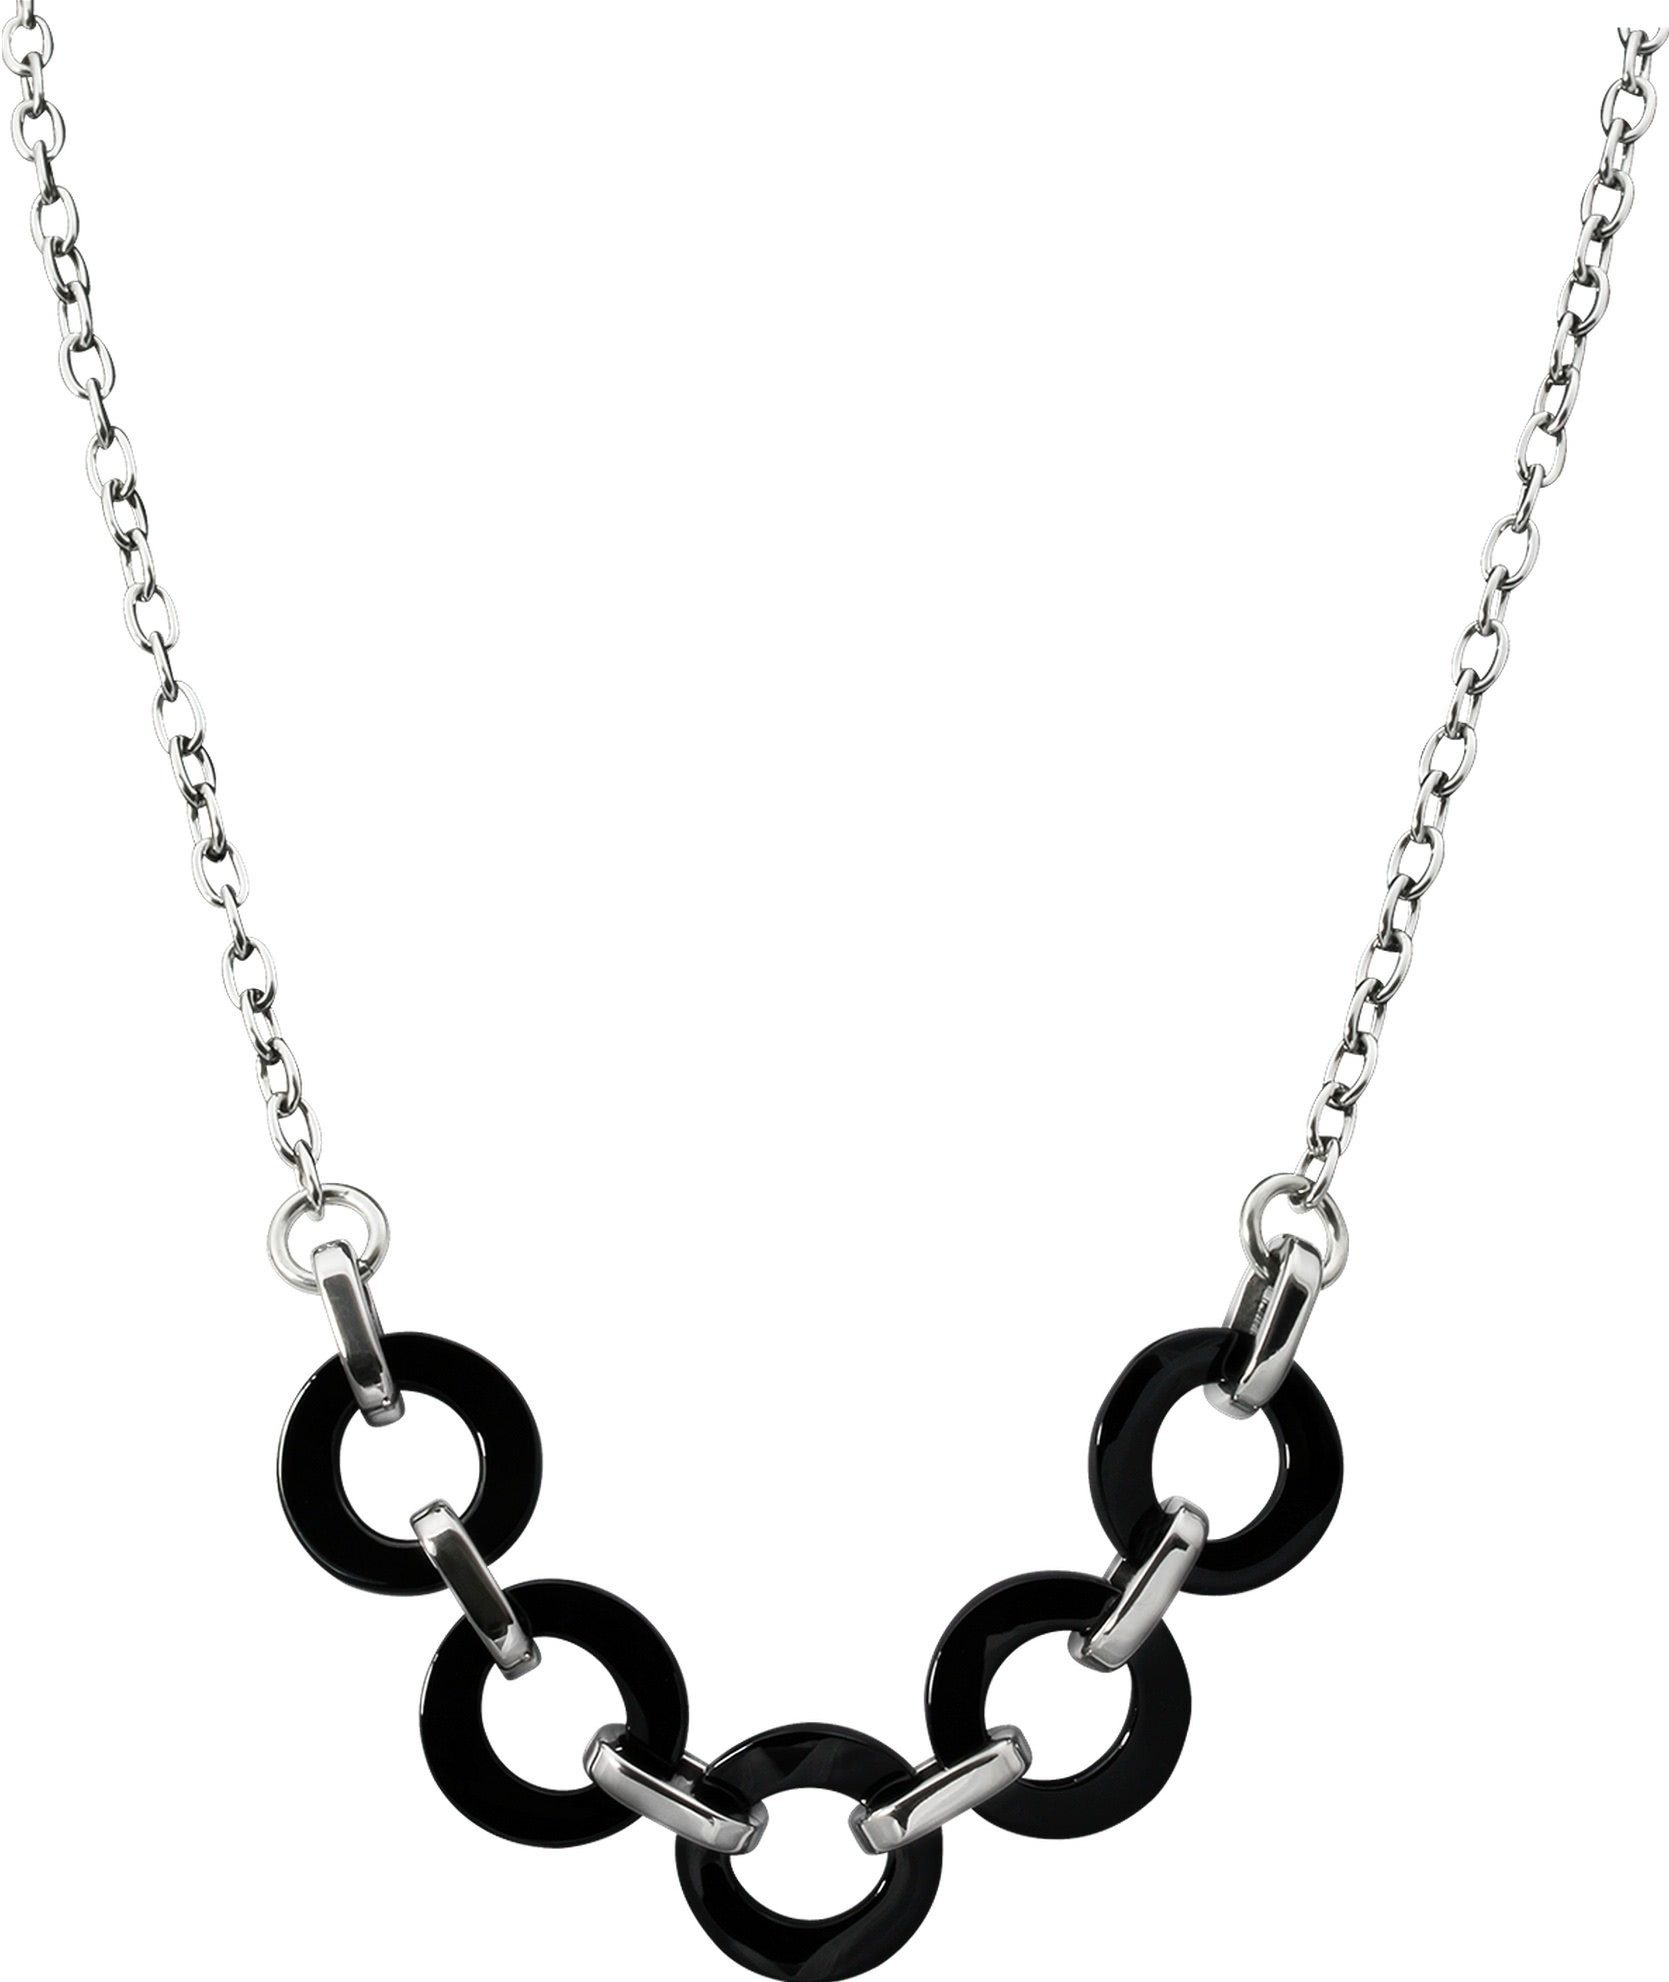 Amello Edelstahlkette Amello Ring Halskette silber schwarz (Halskette),  Damen Halsketten (Ring) aus Edelstahl (Stainless Steel)